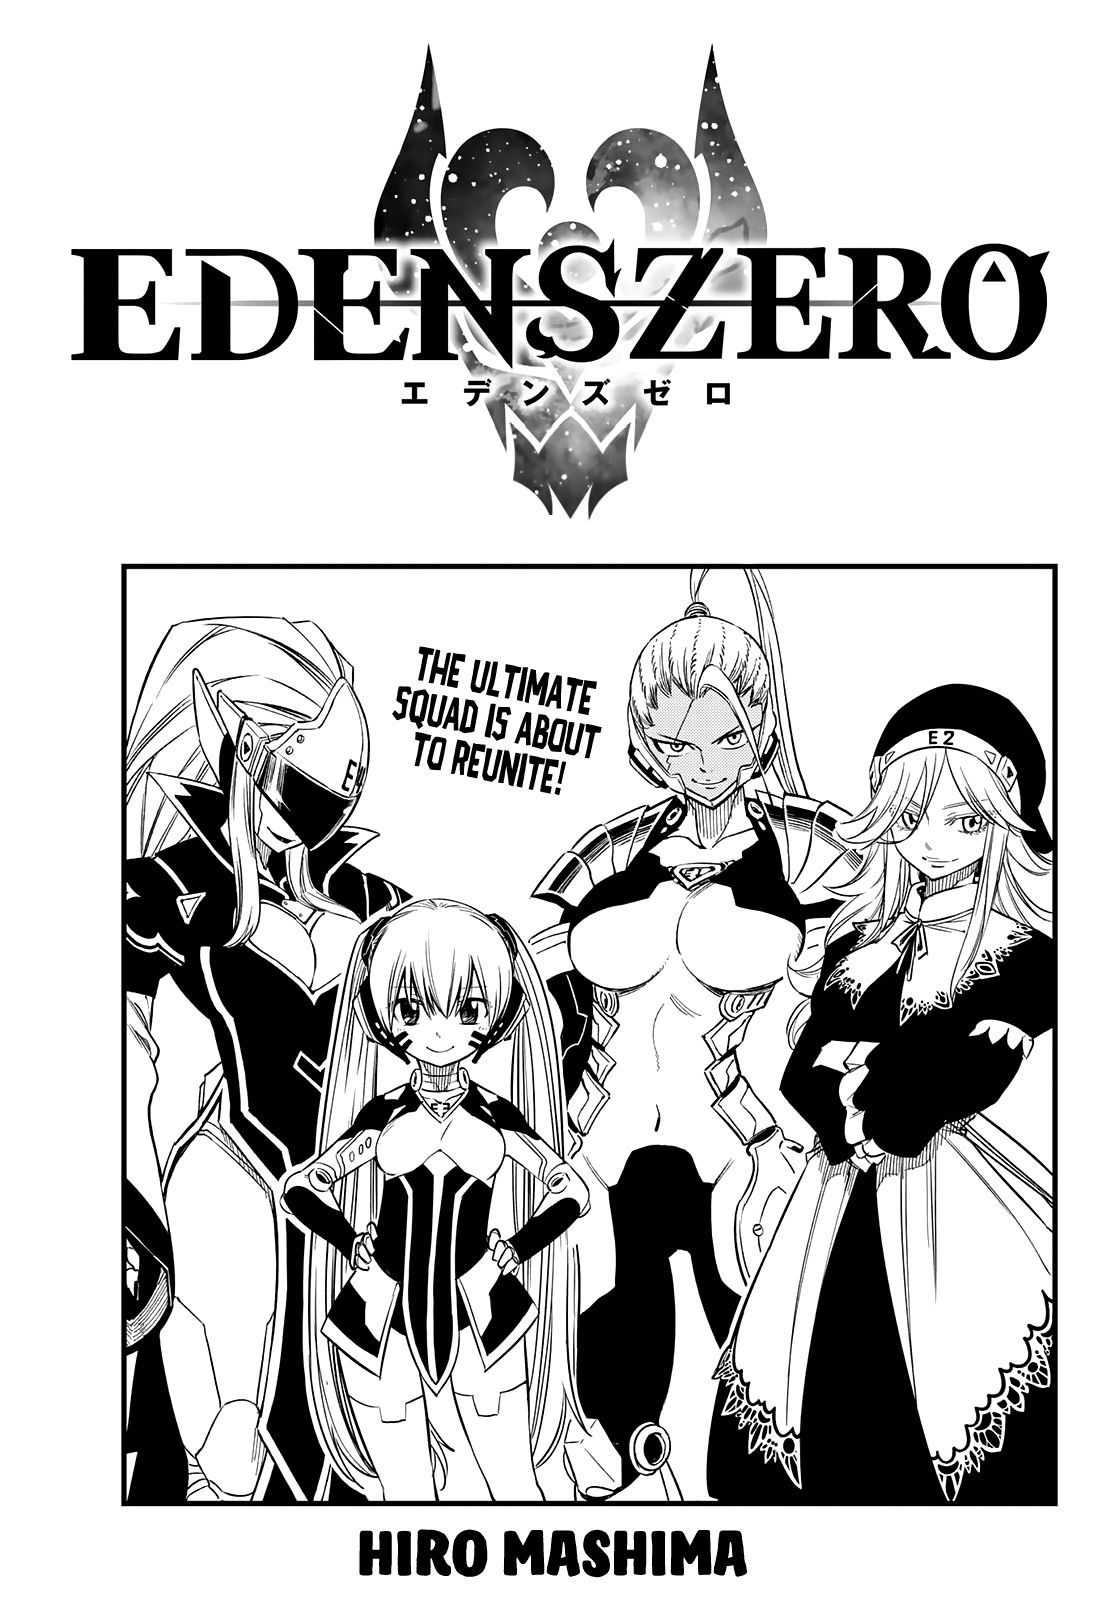 Edens Zero 58 1